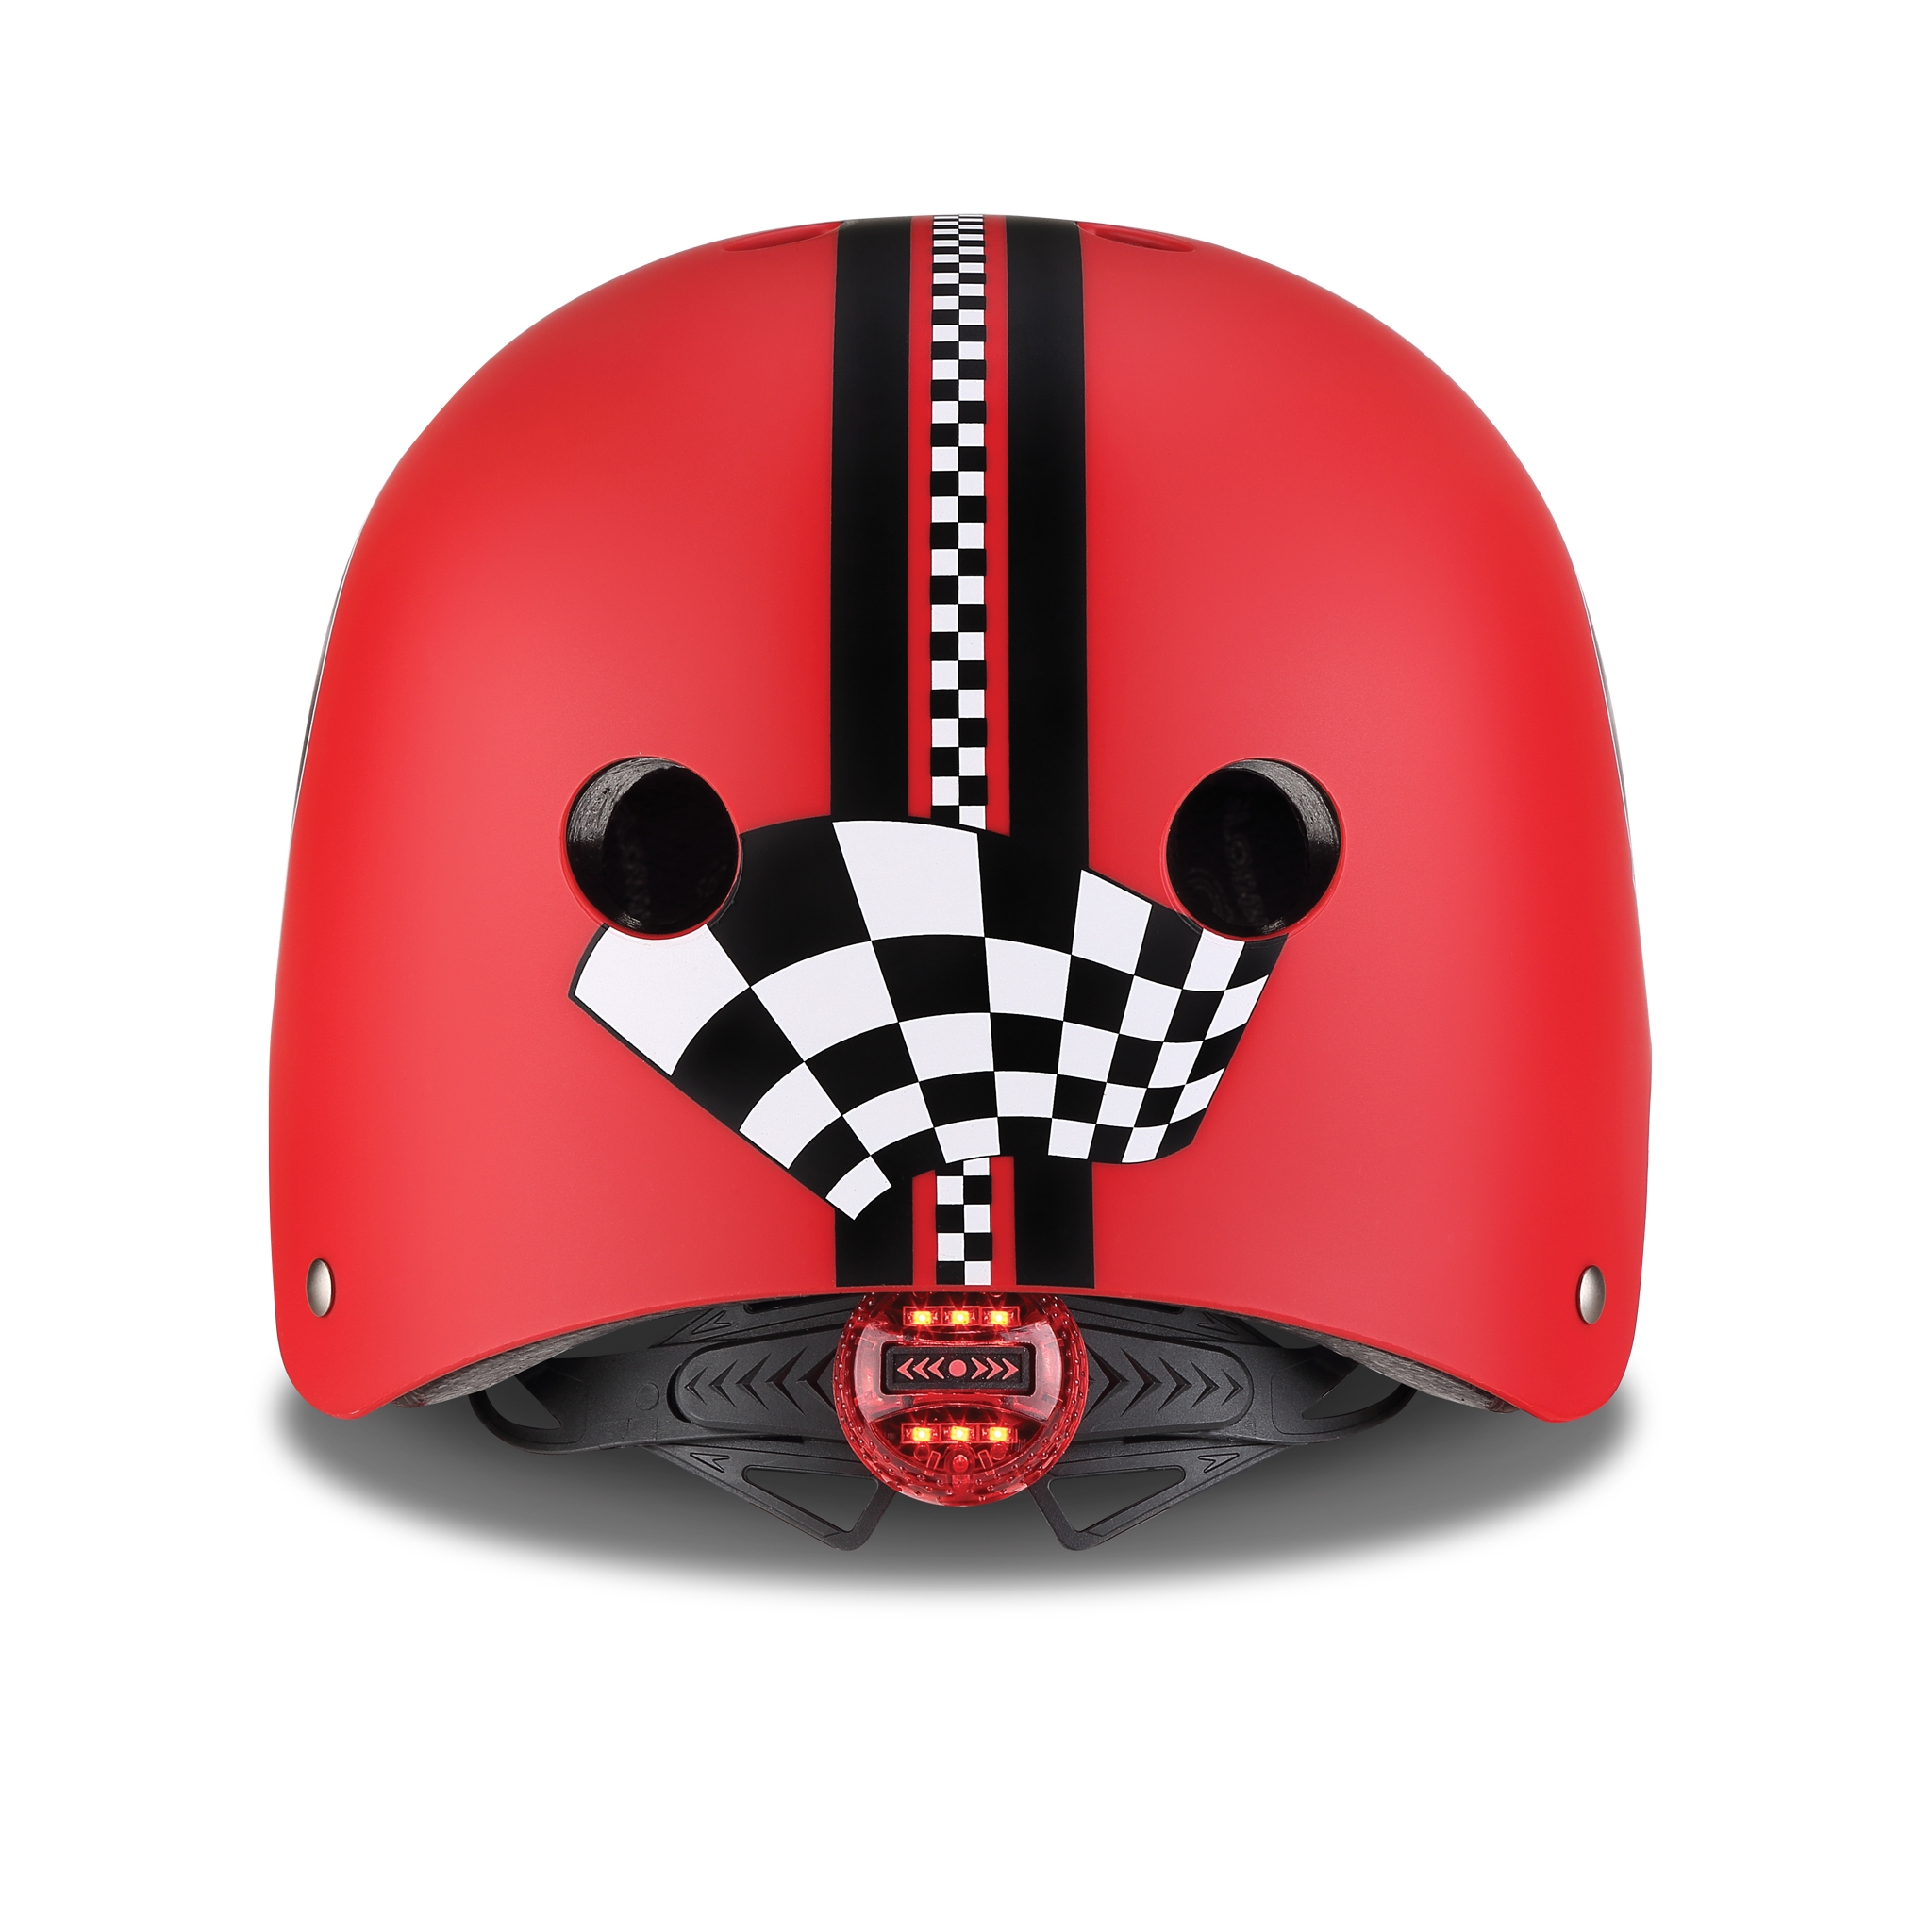 ELITE-helmets-scooter-helmets-for-kids-with-LED-lights-safe-helmet-for-kids-new-red 4